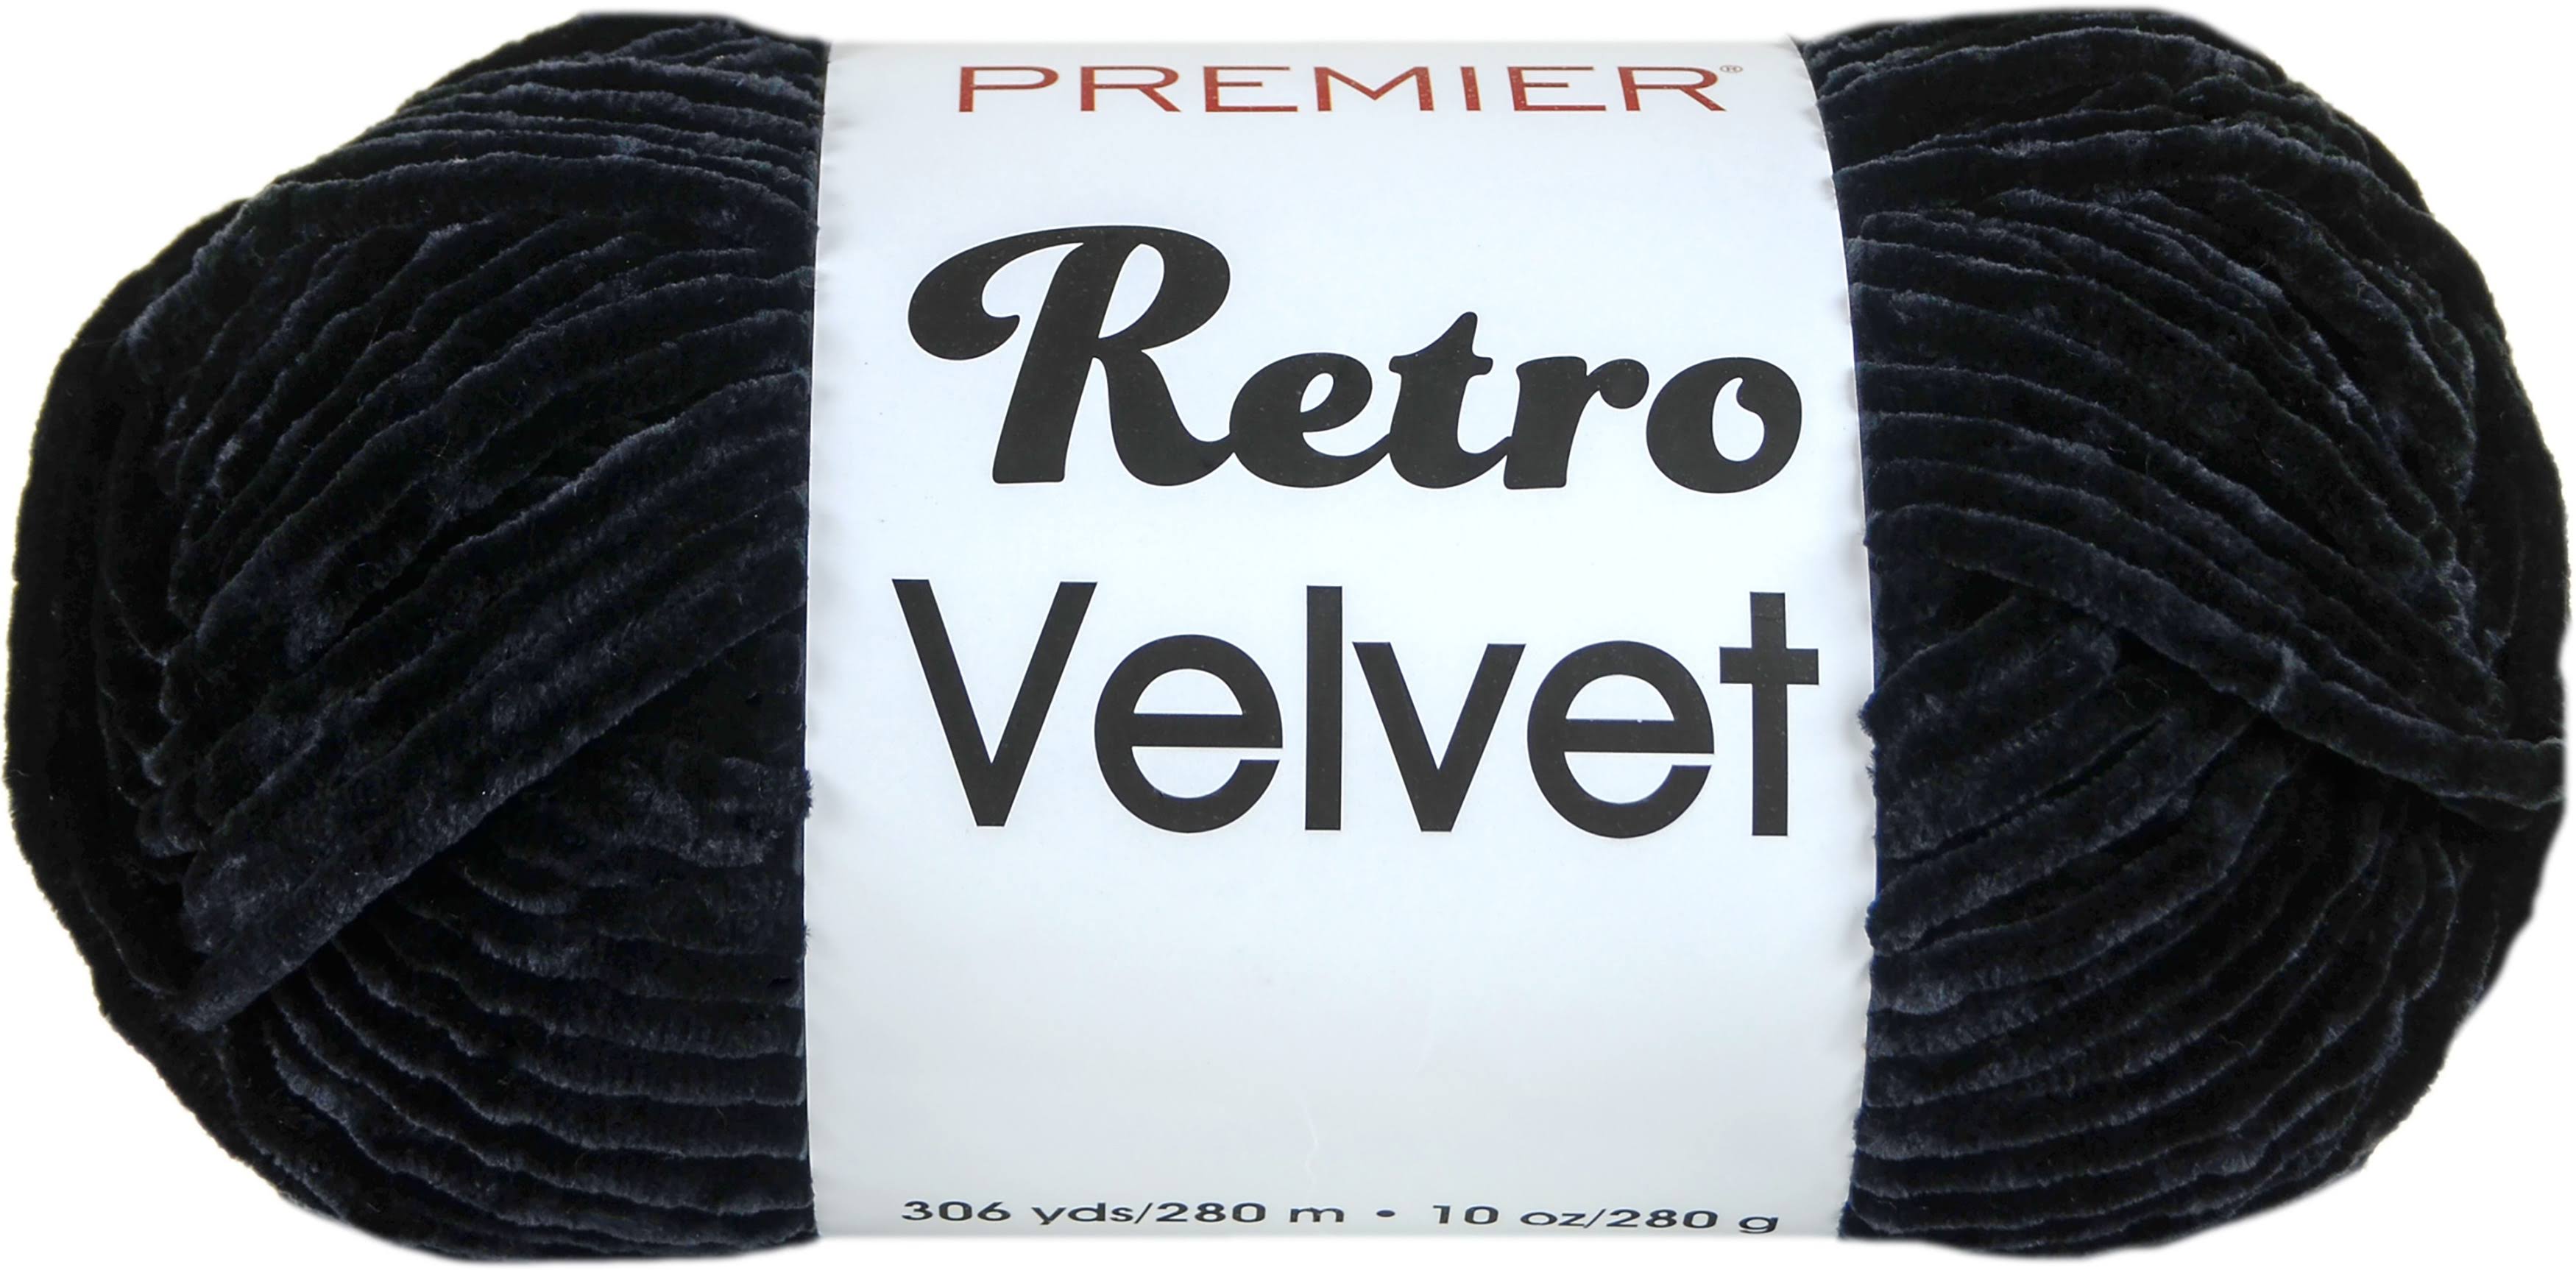 Premier Yarns Retro Velvet-Black